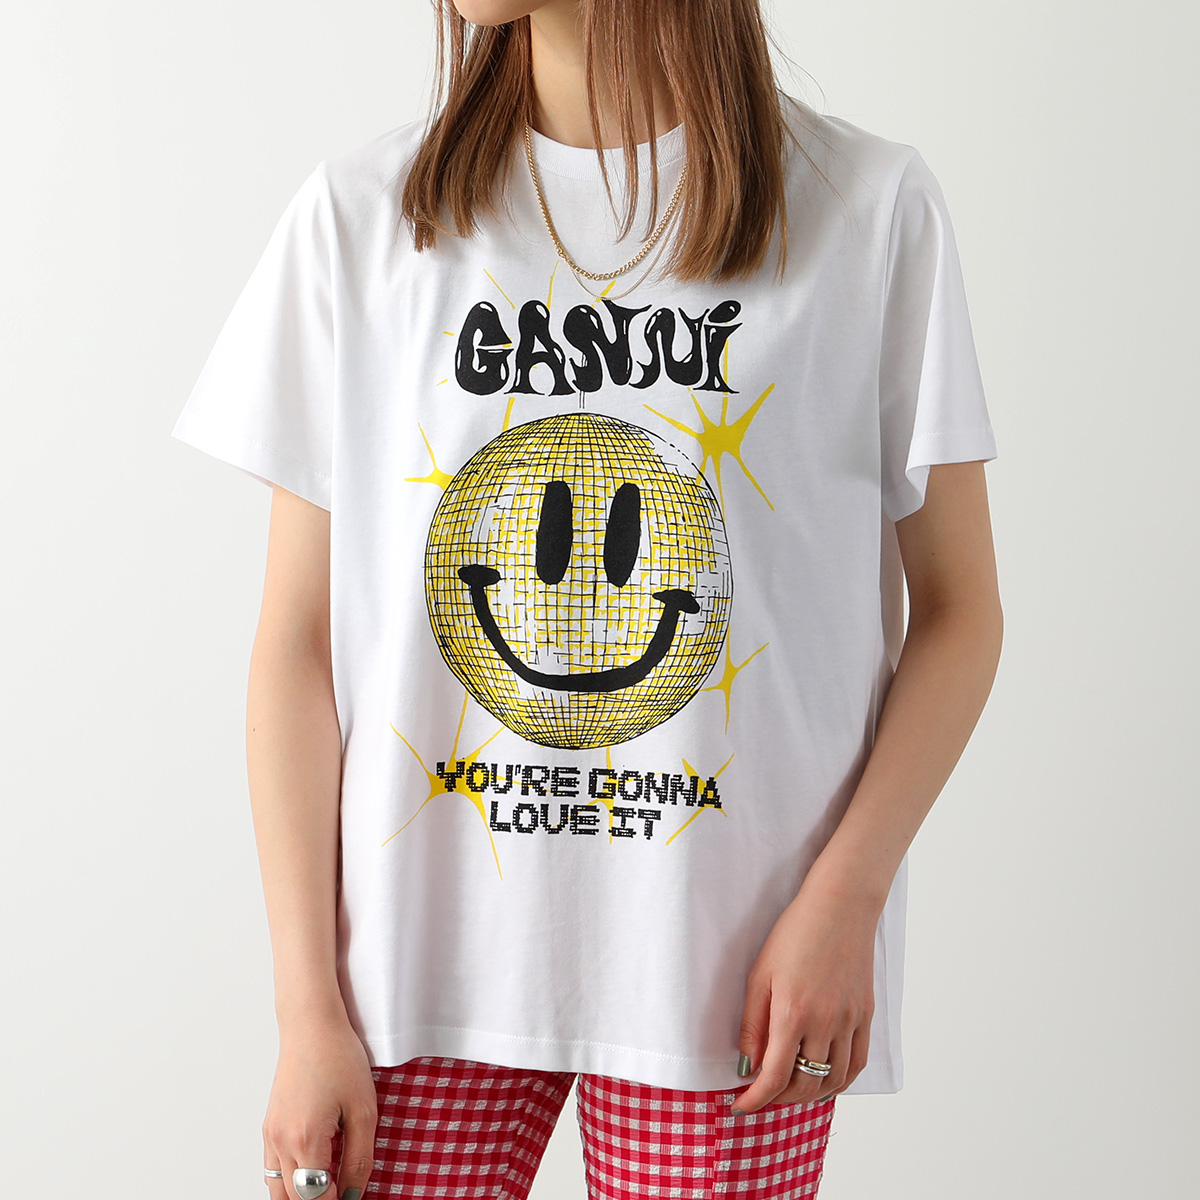 GANNI ガニー Tシャツ JERSEY SMILEY RELAXED T SHIRT T3356-3575 T3359-3578 レディース  コットン 半袖 スマイル ロゴT カラー2色 | インポートセレクト musee